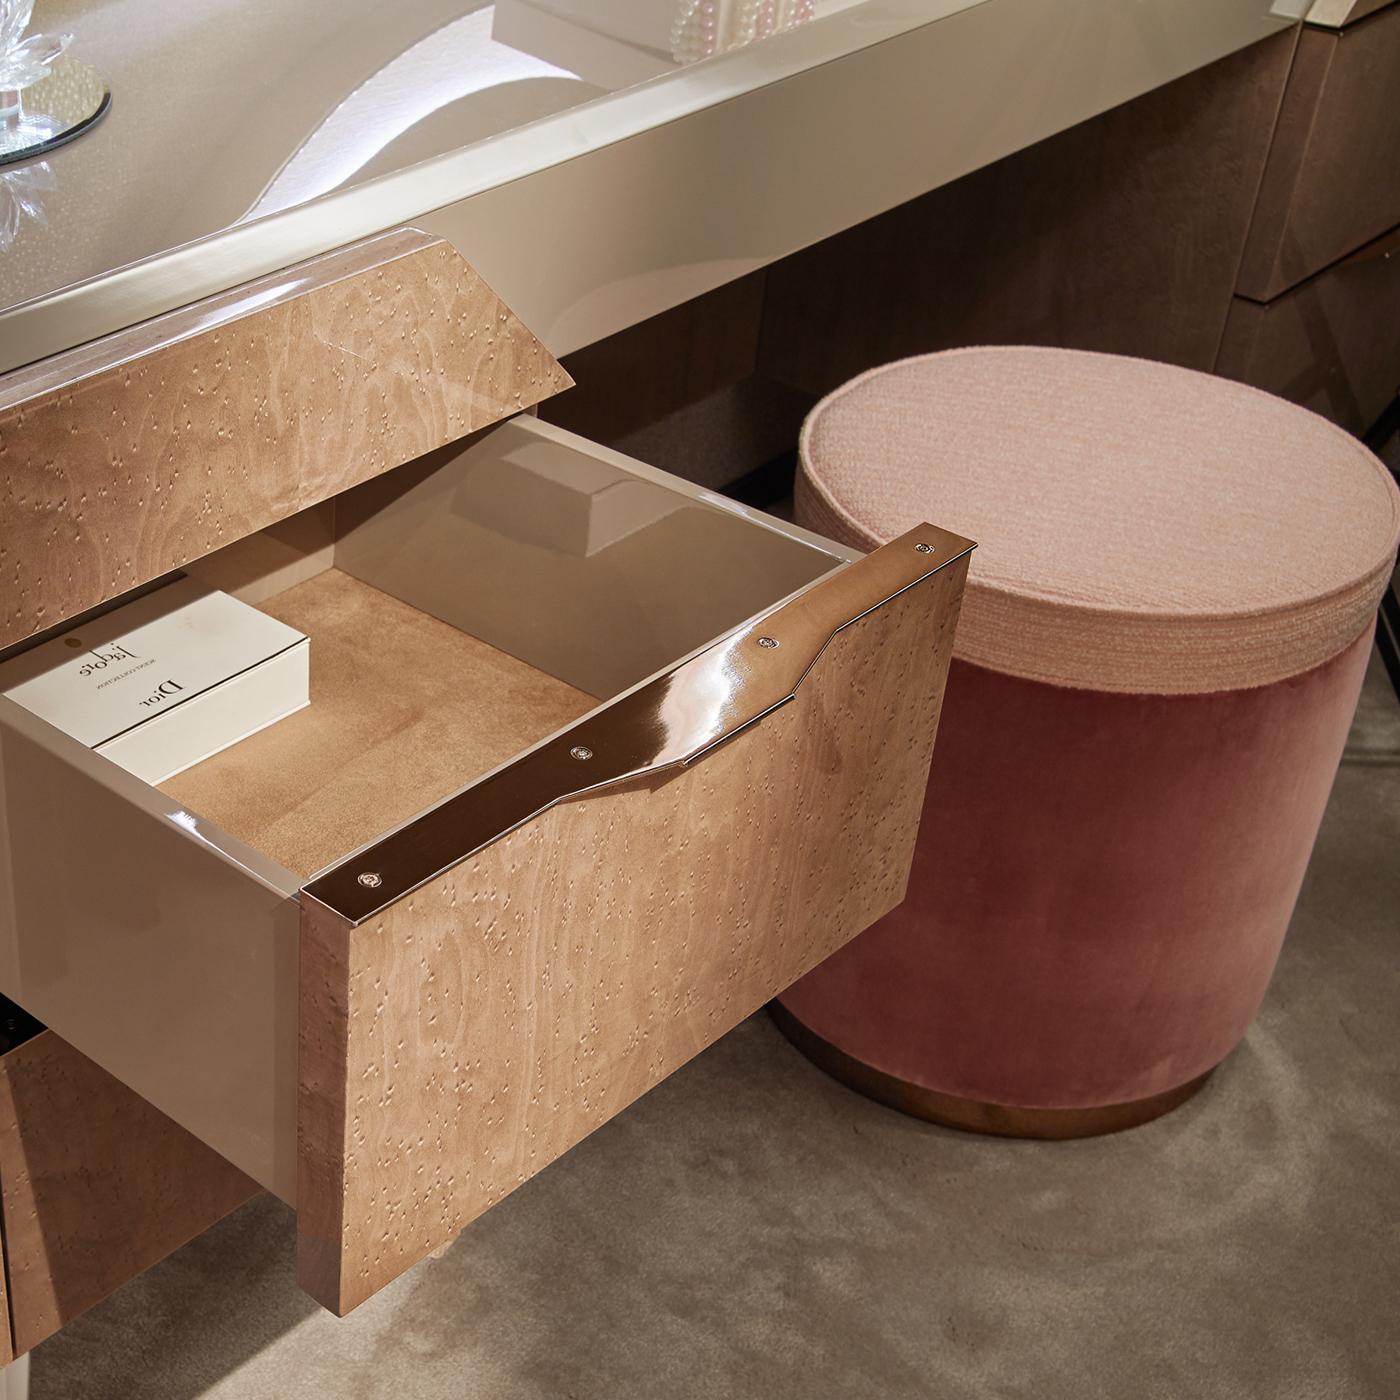 Dieser schöne, aus Holz gefertigte Schreibtisch ist ganz in sanften Grautönen gehalten und eignet sich perfekt für jedes moderne Schlafzimmer oder Wohnzimmer. Eine schlichte graue Platte wird durch einen Korpus aus gemasertem Holz und Schubladen in